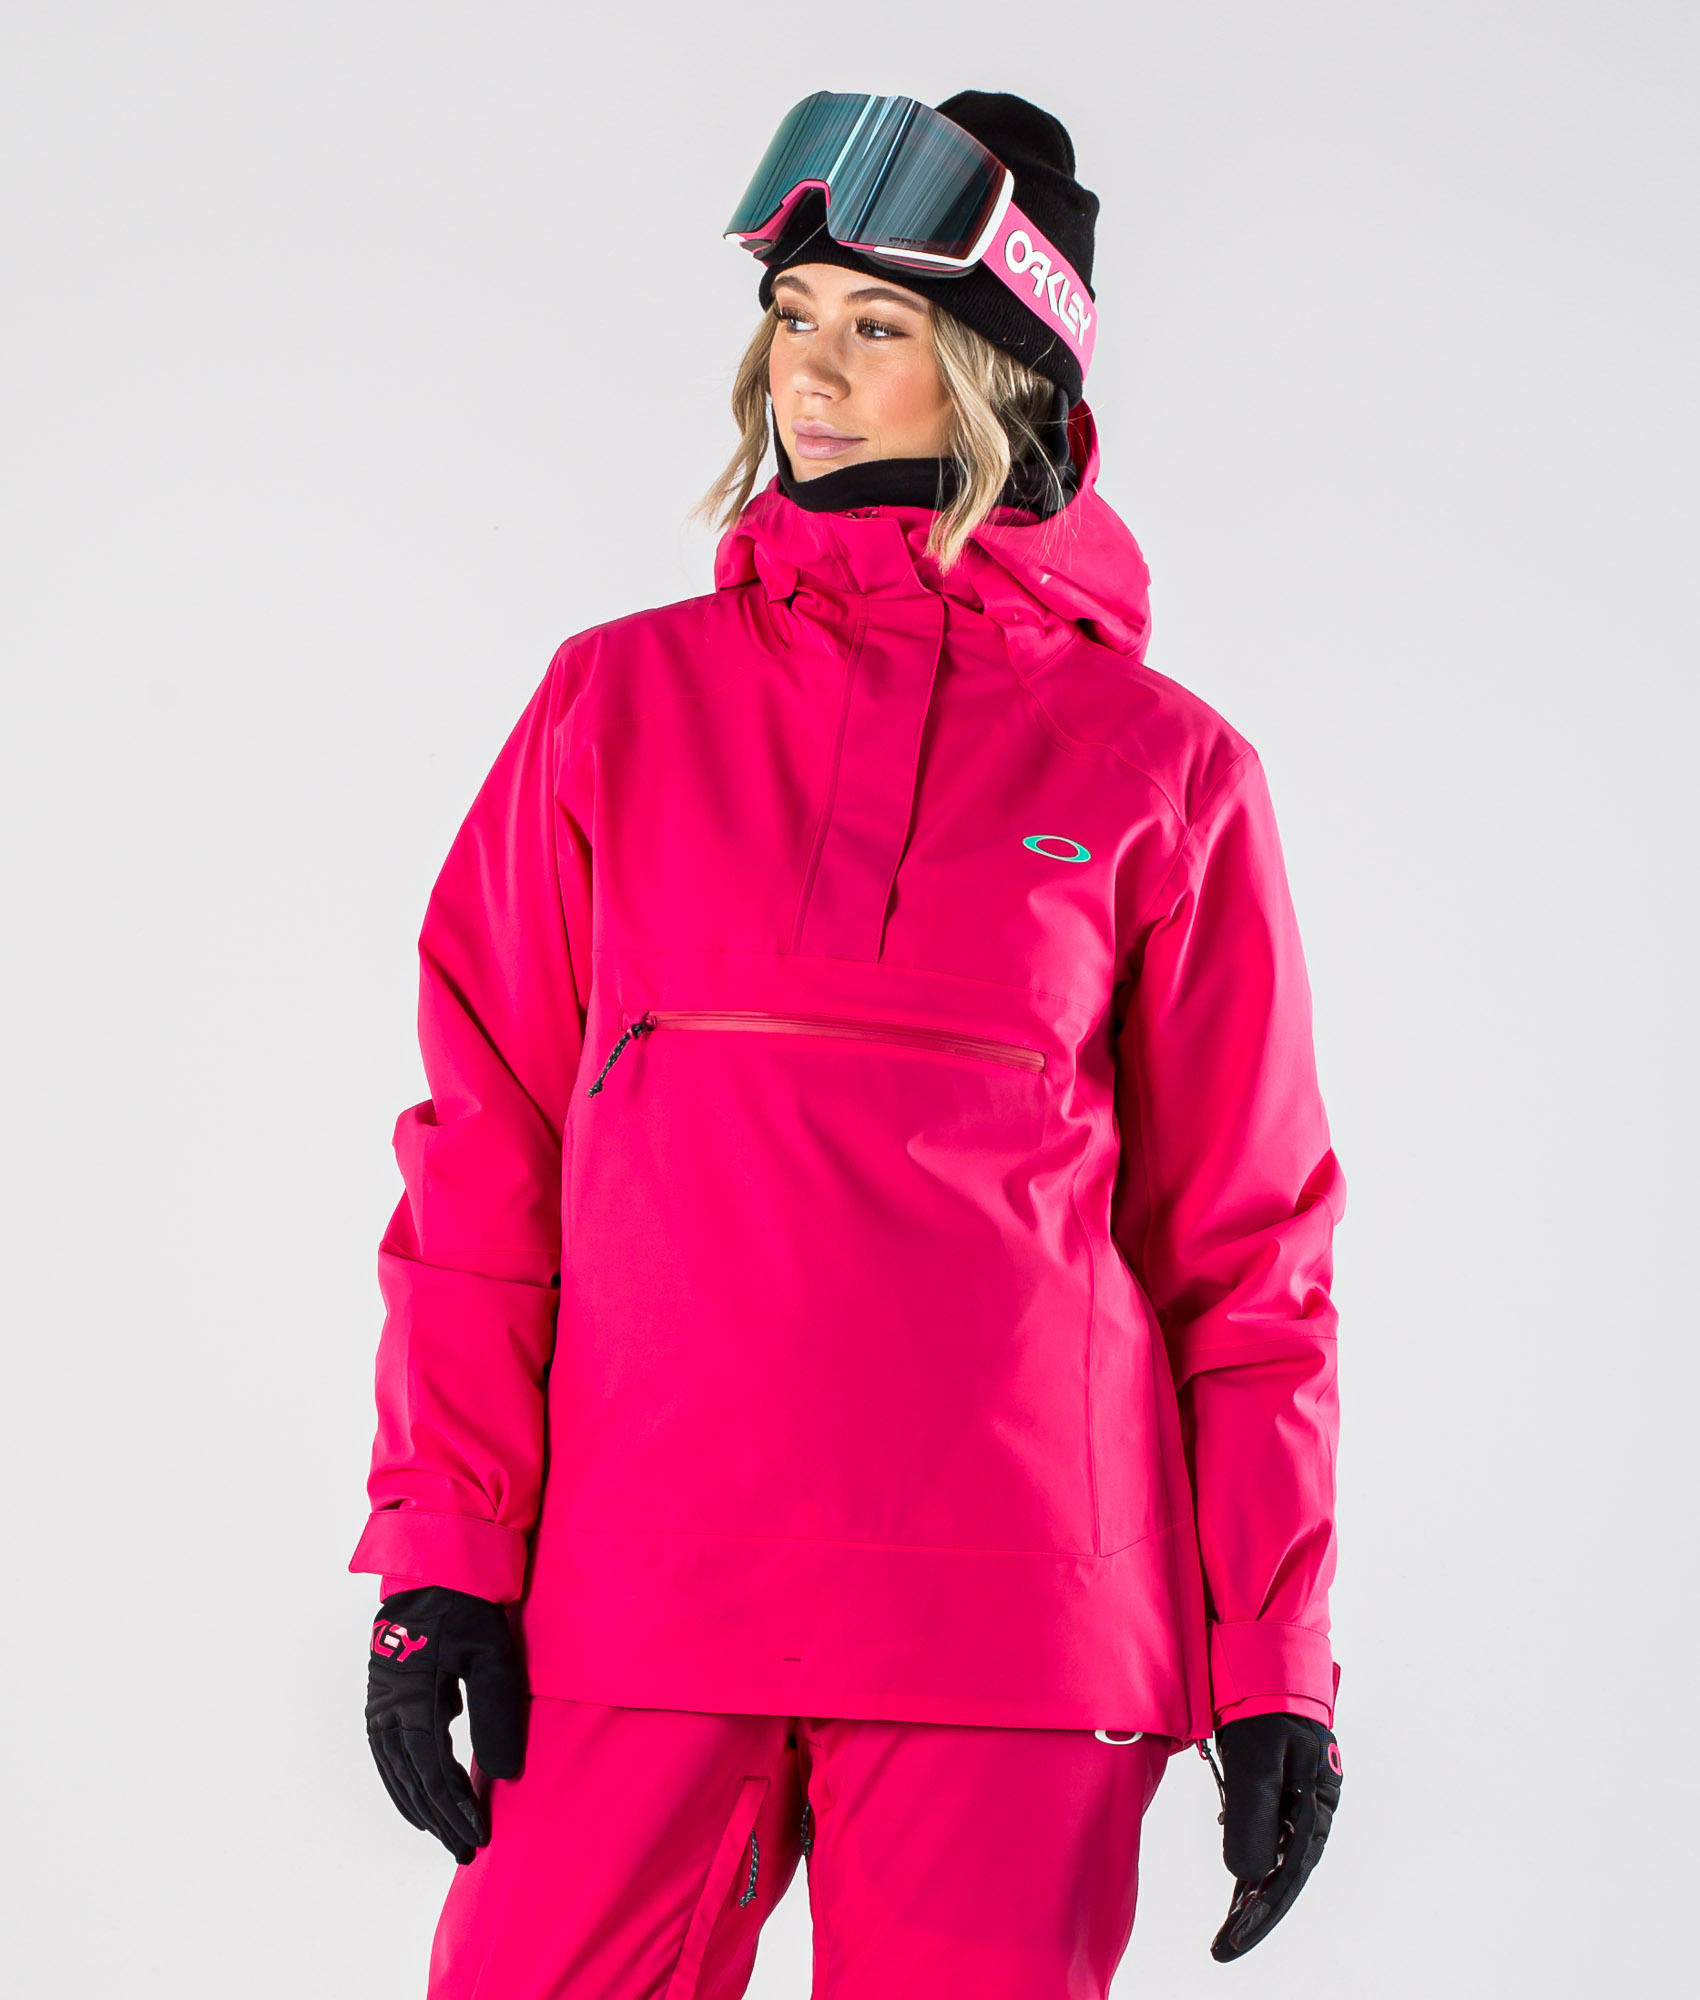 oakley womens snowboard jacket